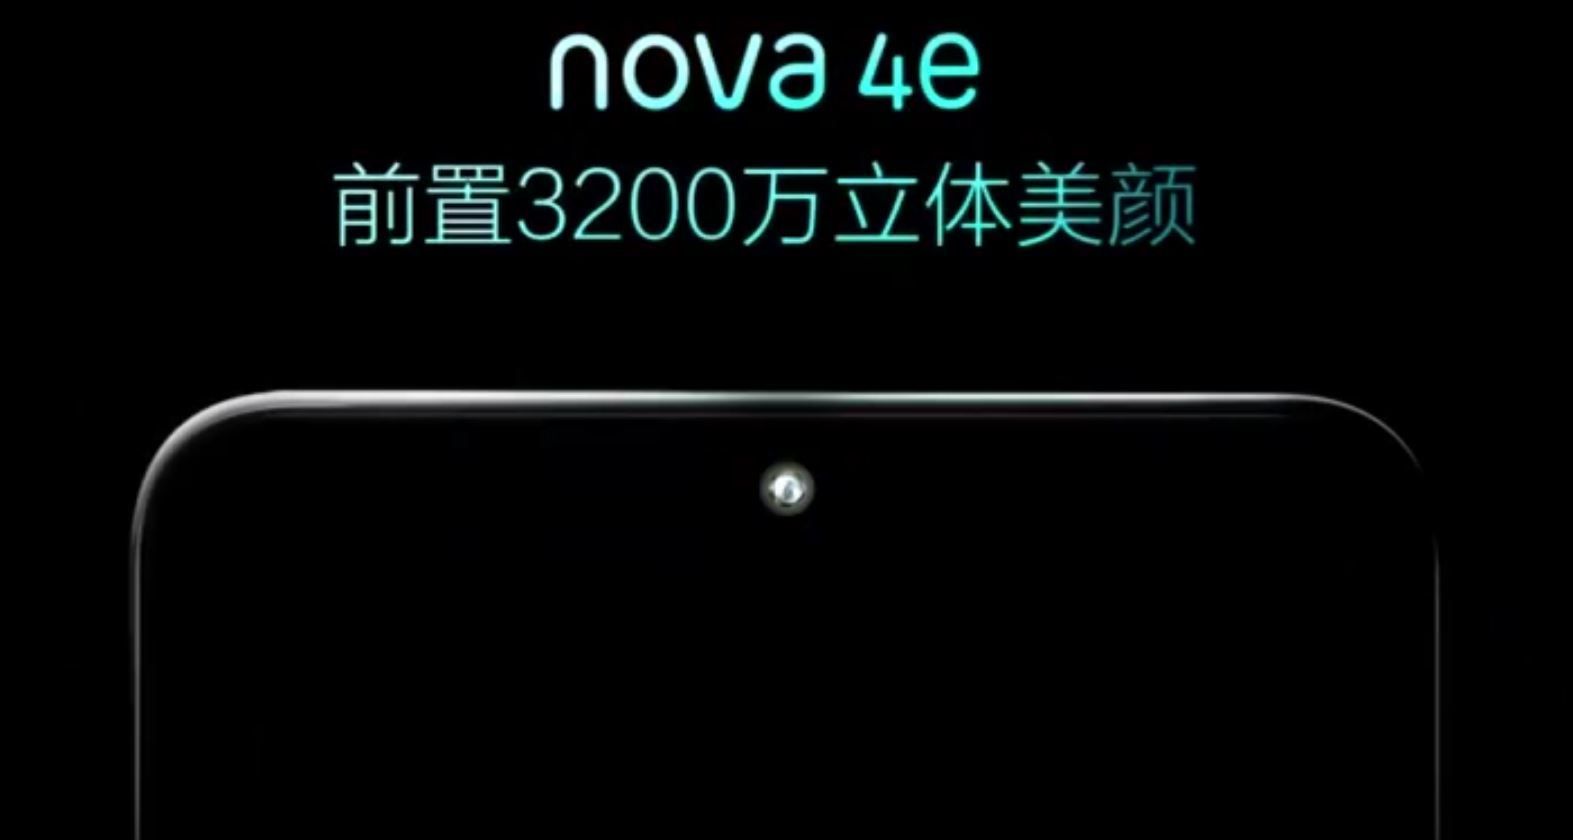 Huawei Nova 4e с передней камерой 32 МП замечен в тизер